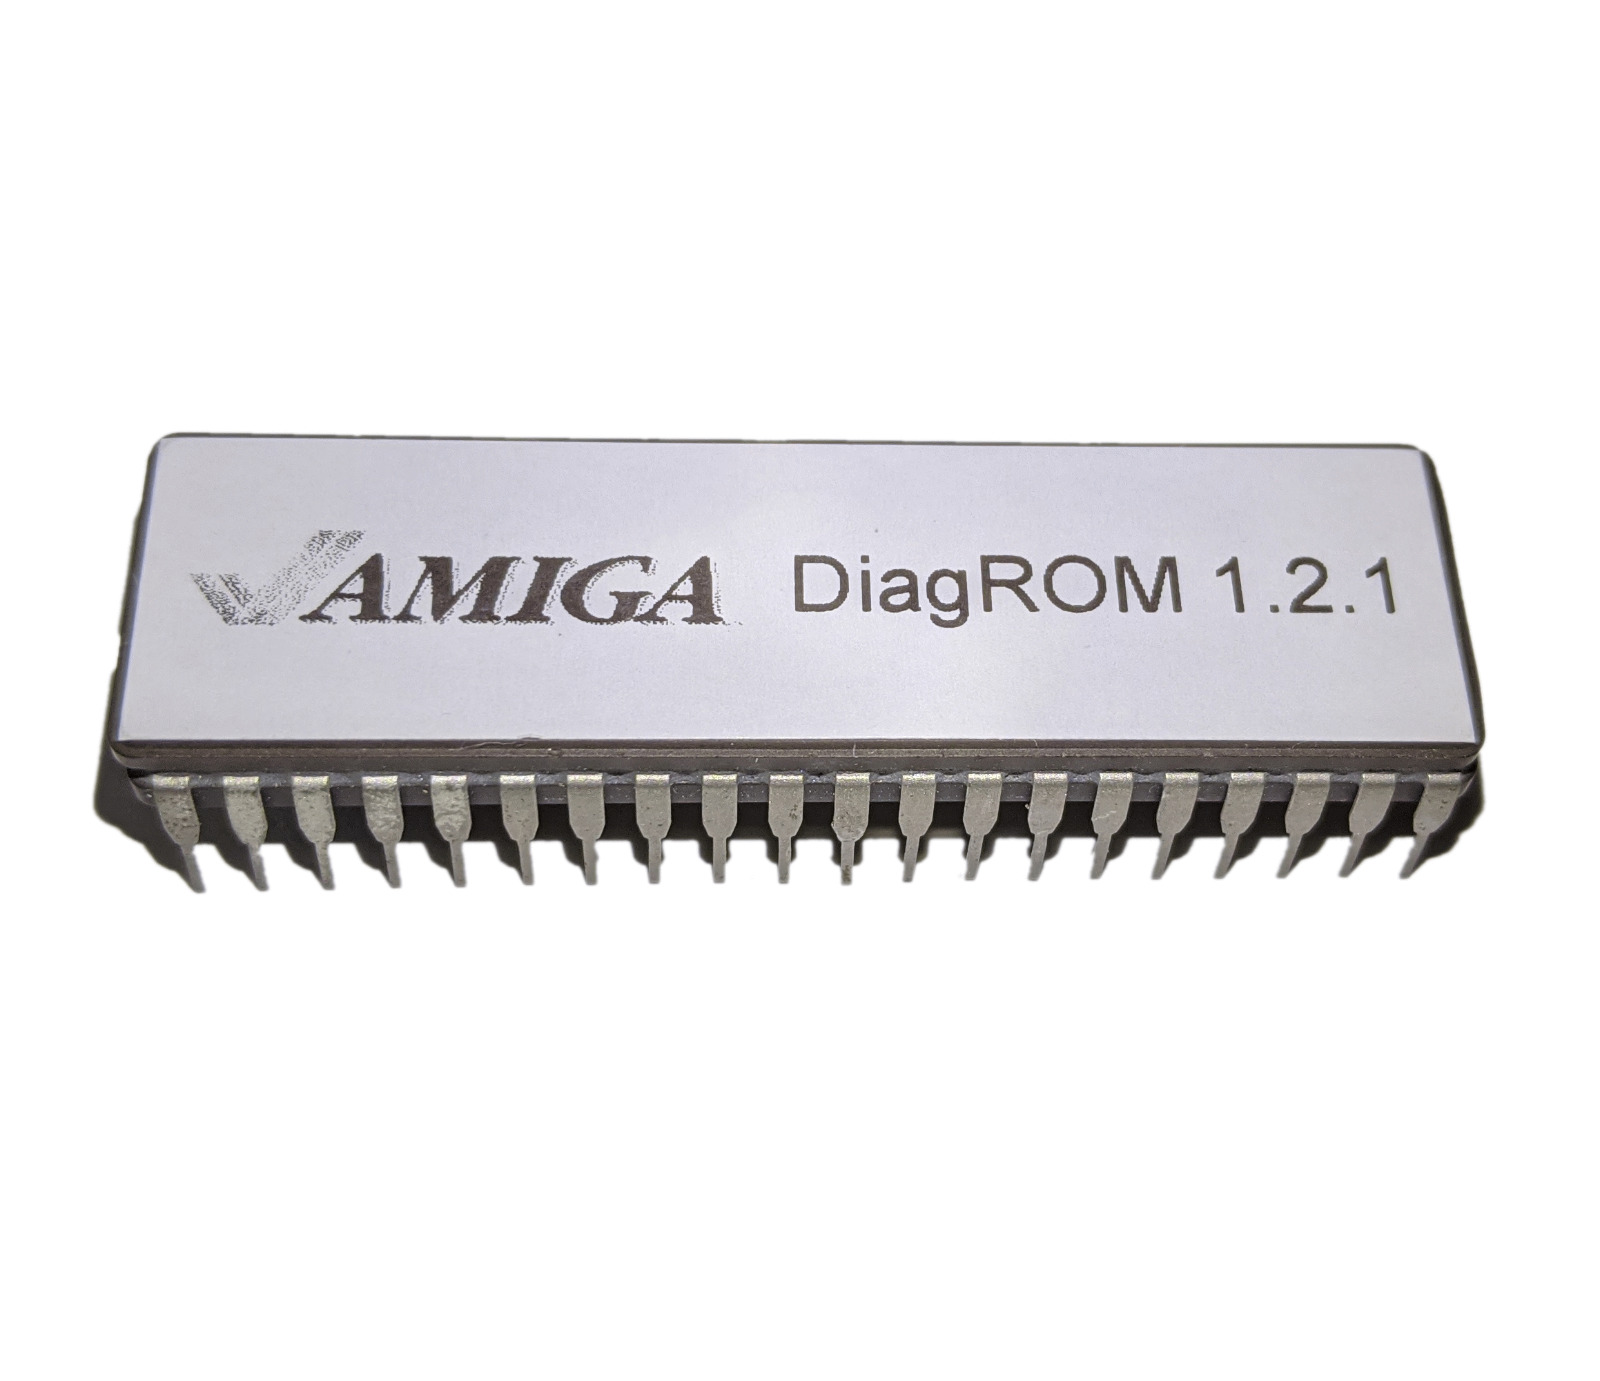 New DiagROM V1.2.1 Diagnostic ROM for Amiga 500 600 2000 #676